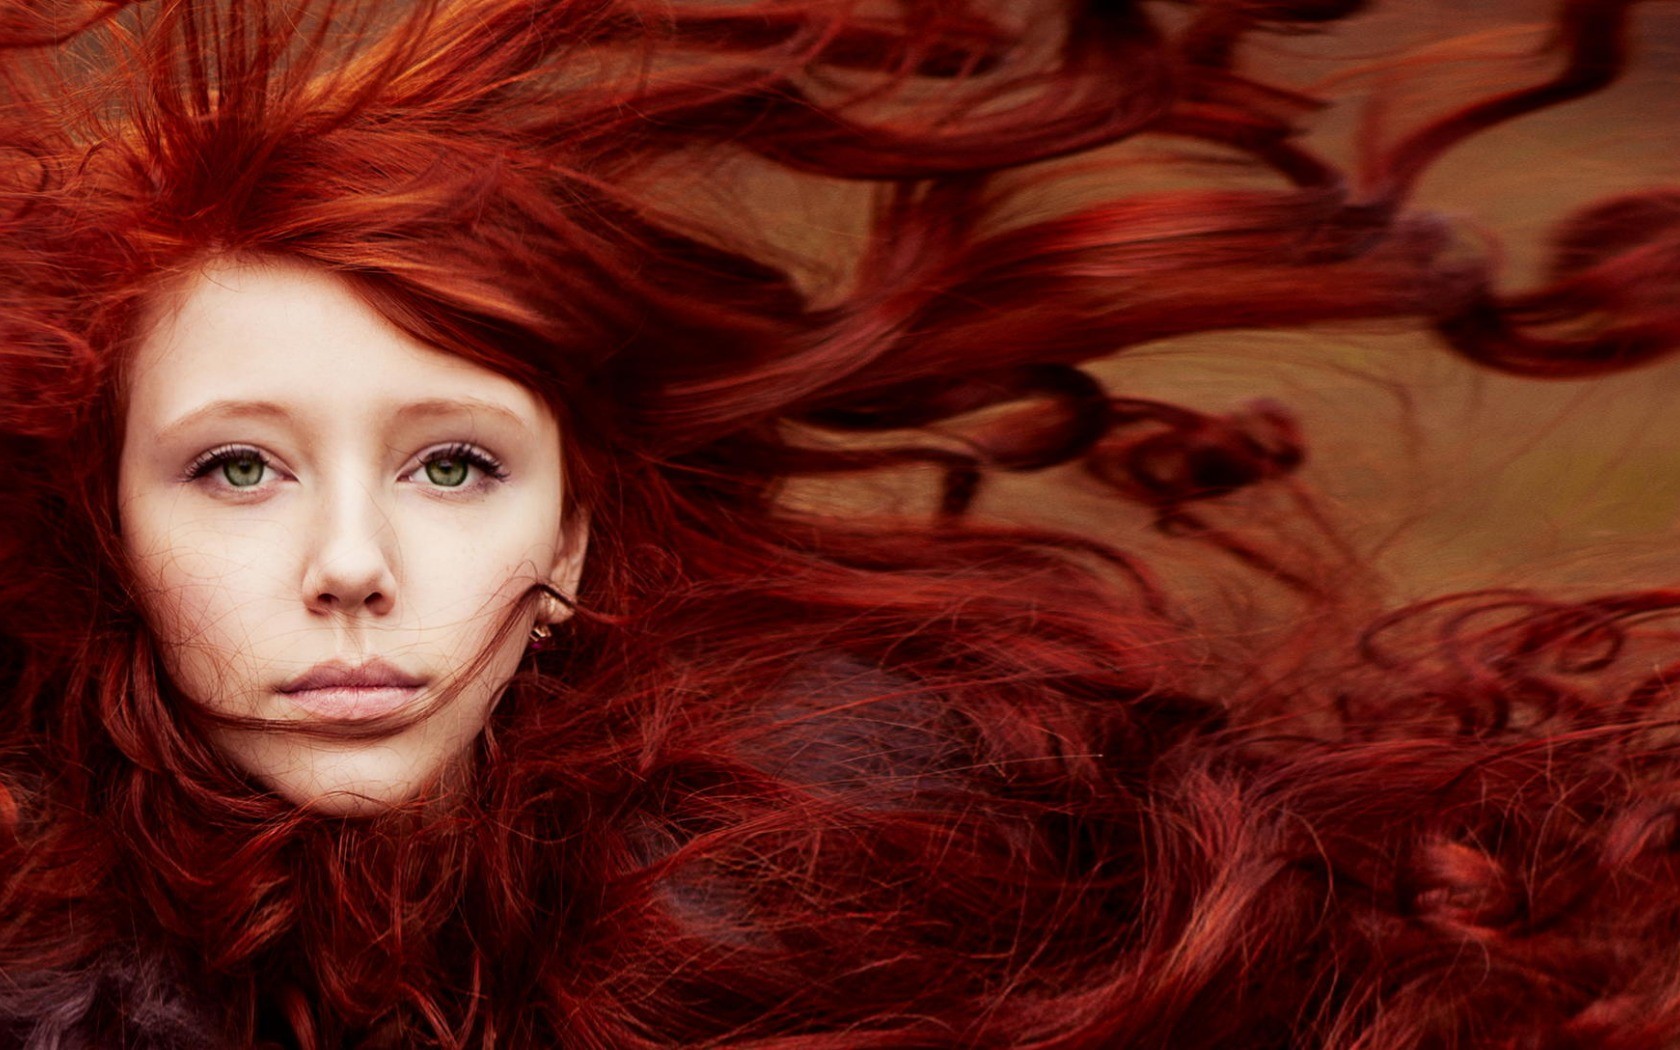 women model redhead face portrait long hair green eyes hair in face windy Wallpaper